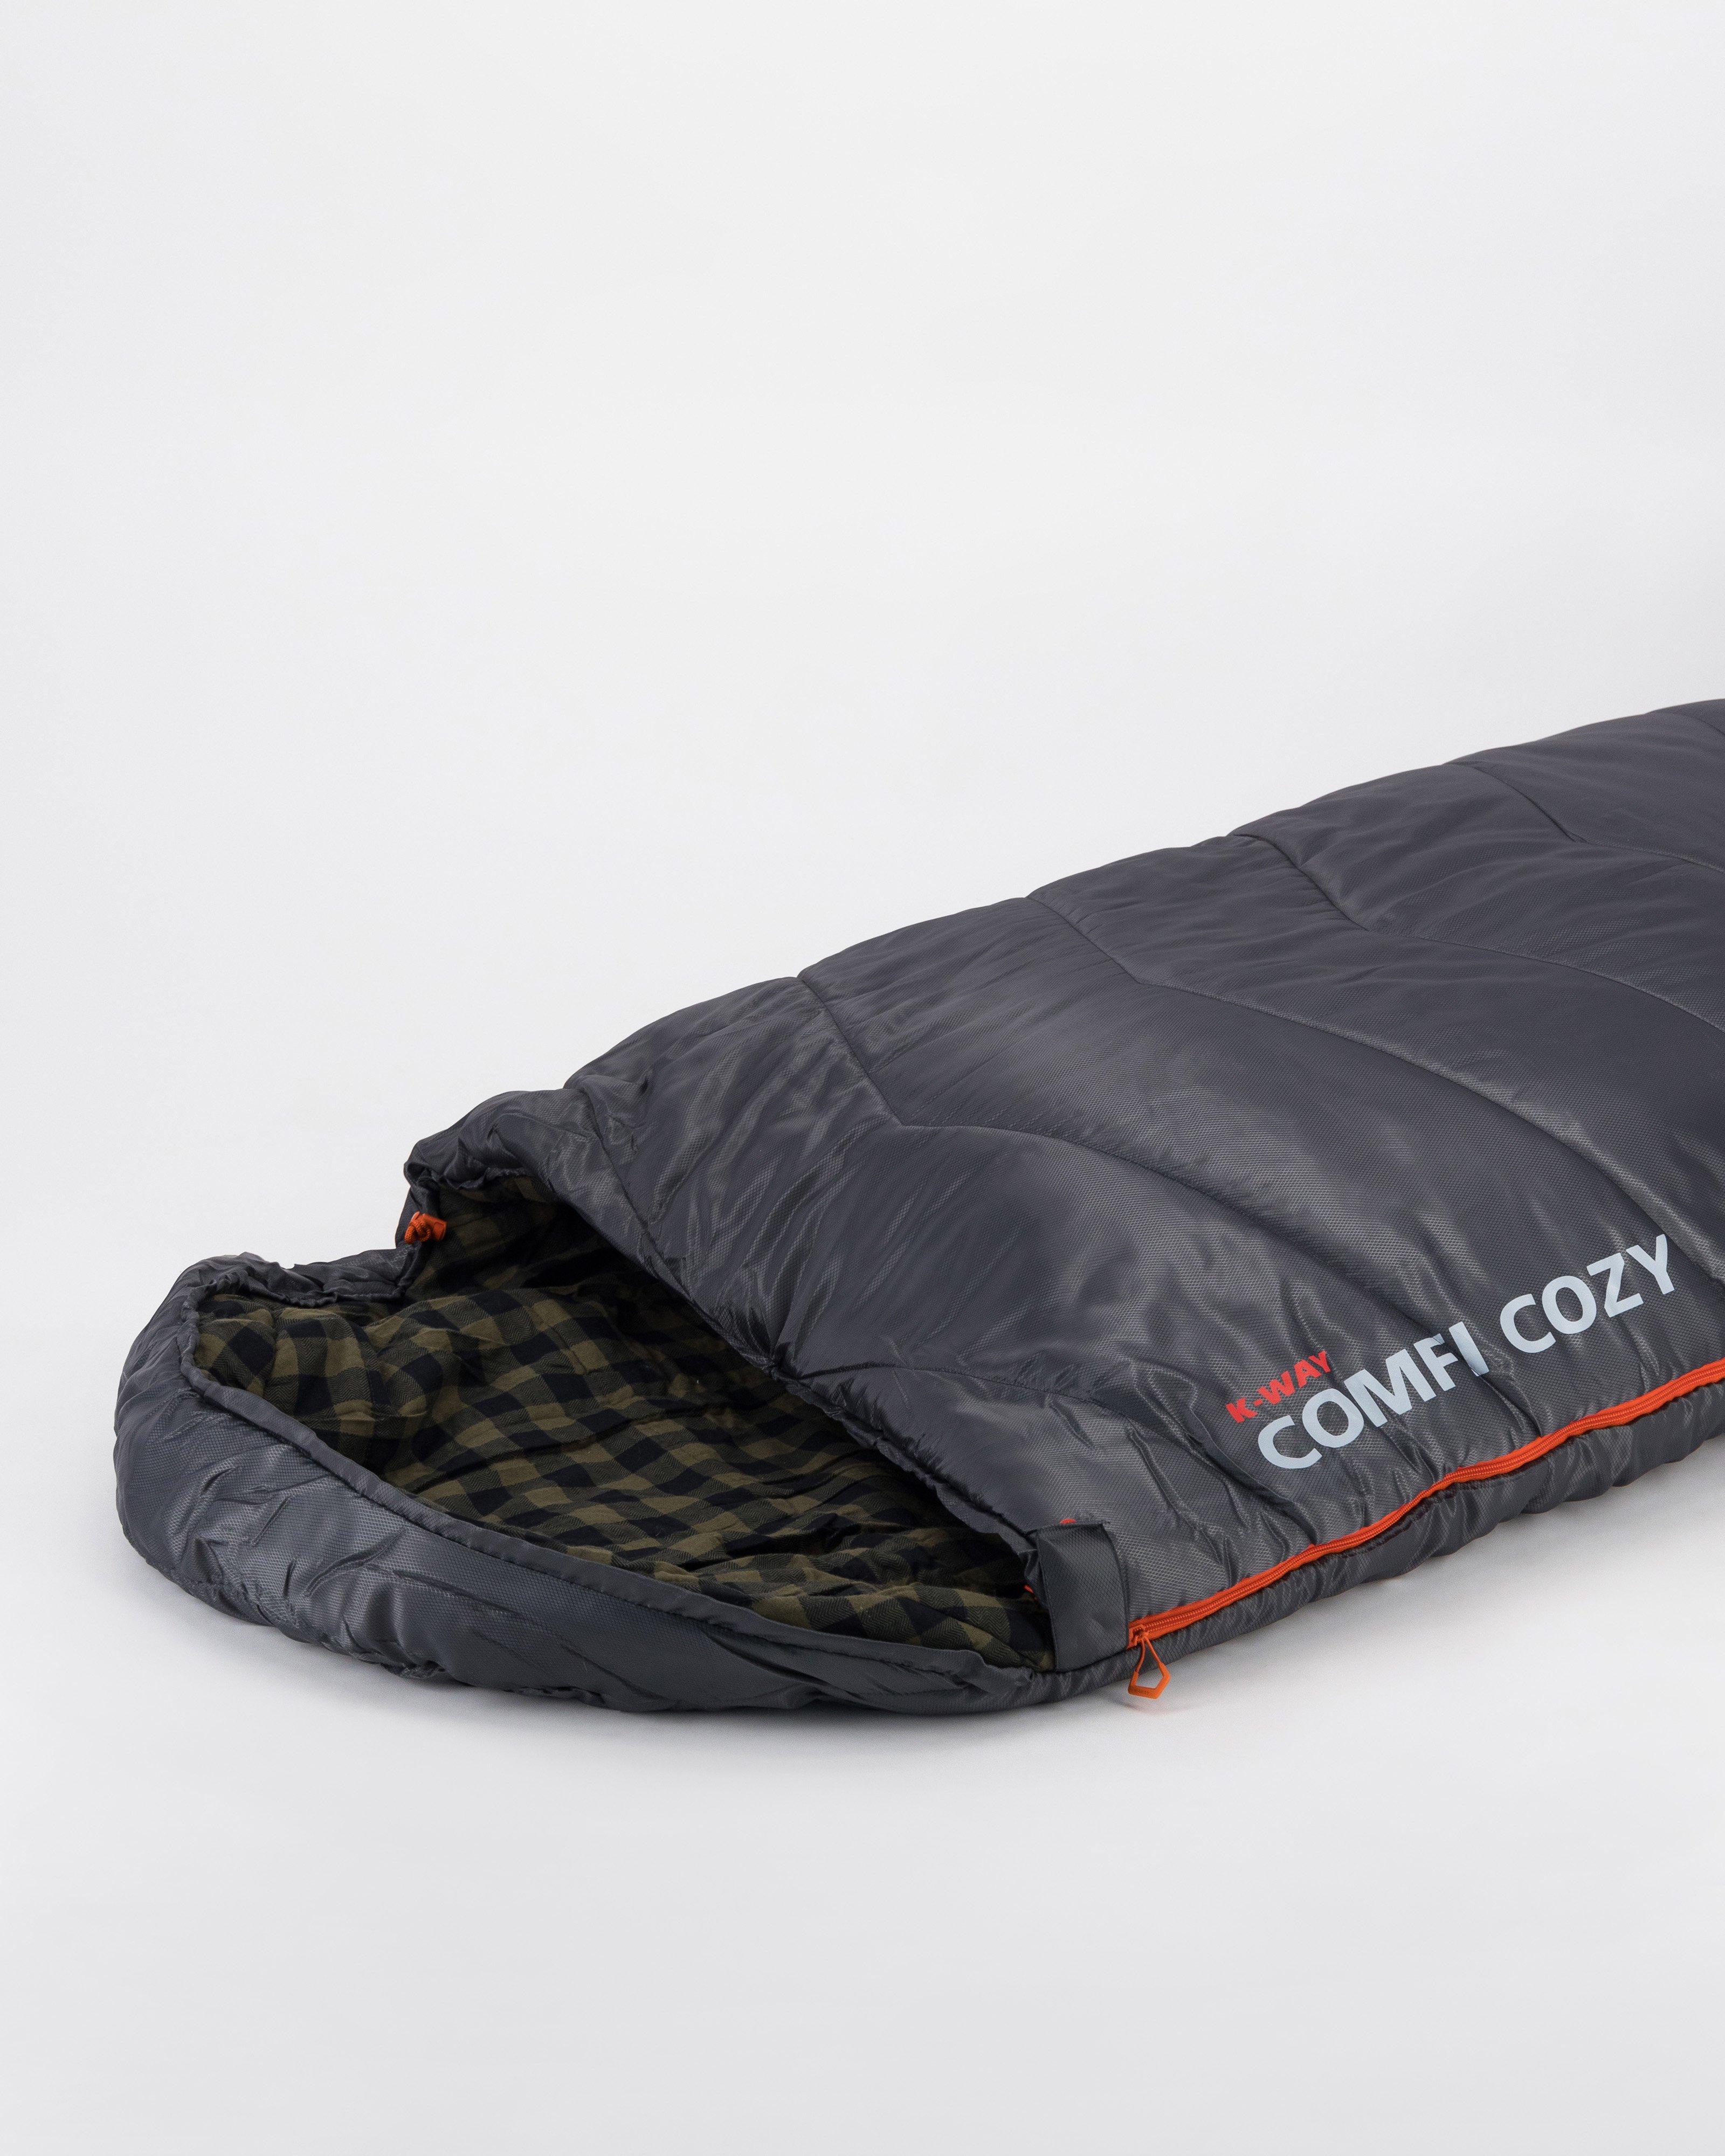 K-Way Comfy-Cozy Sleeping Bag -  Graphite